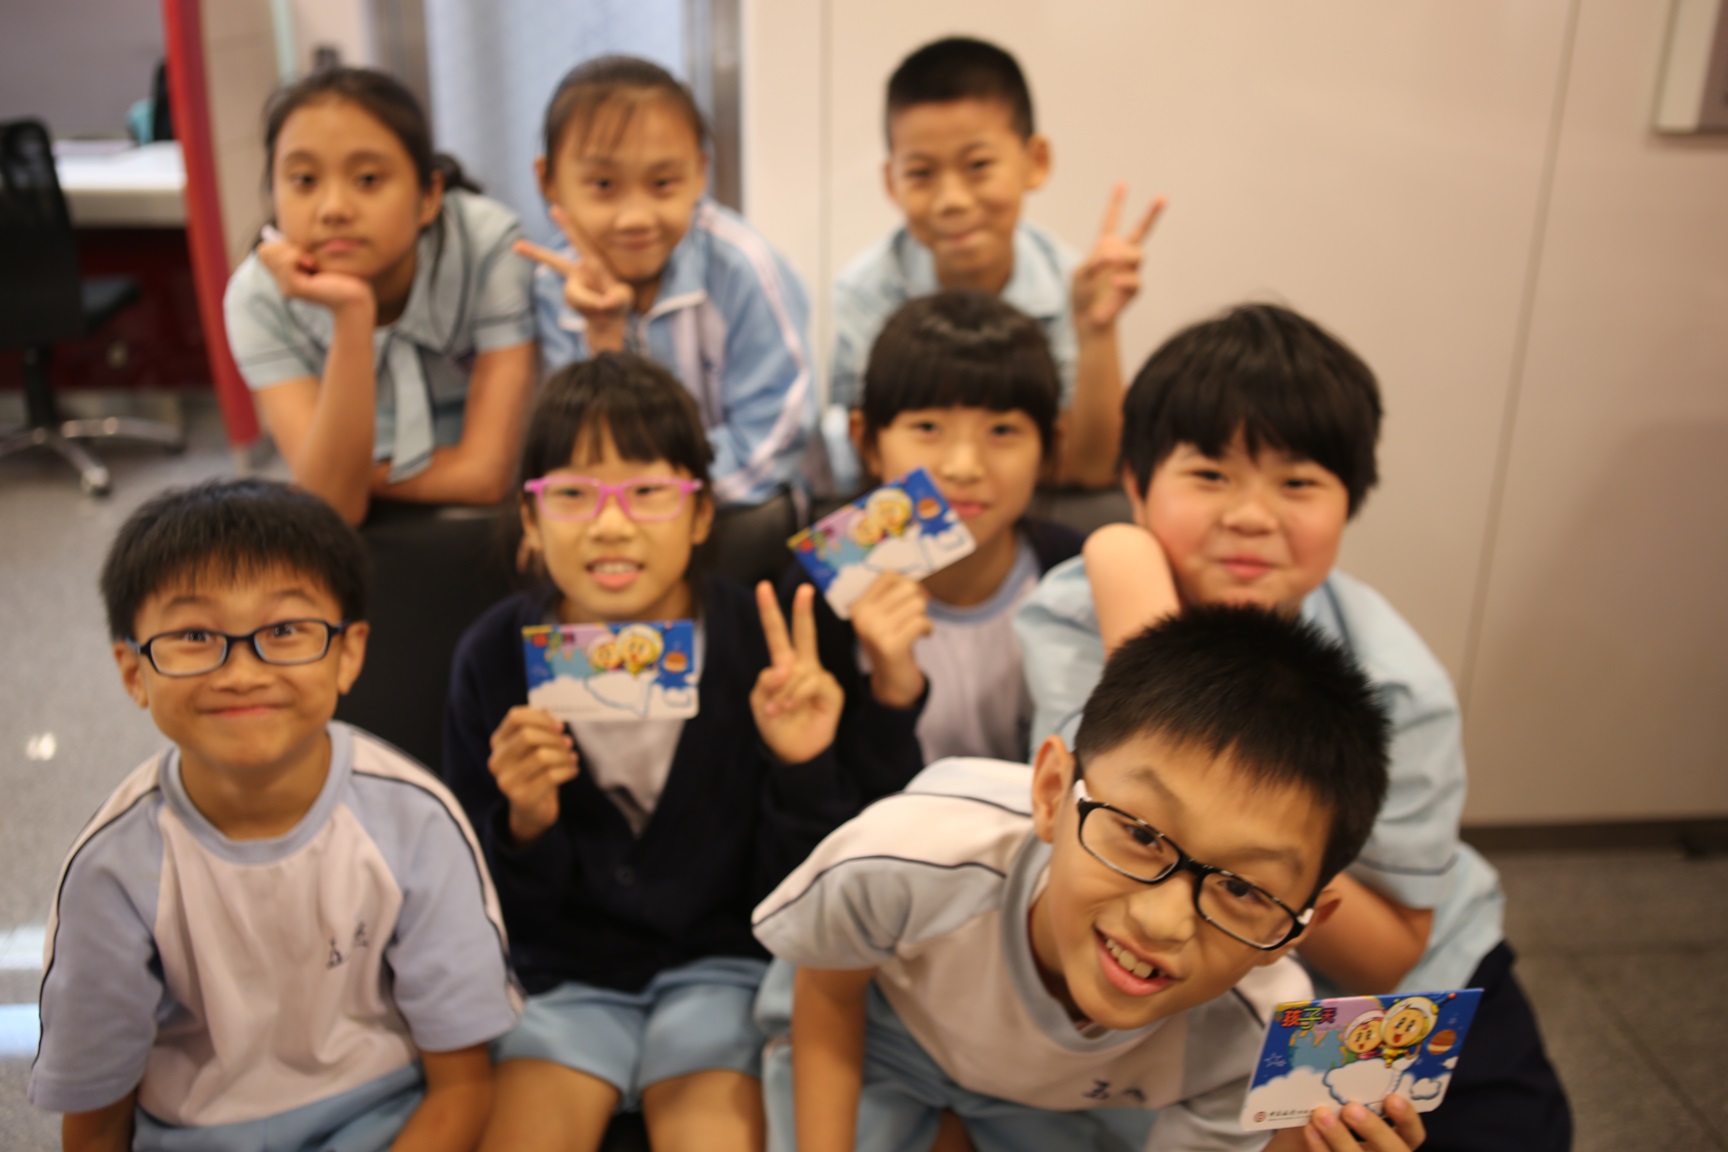 中銀香港慈善基金為兒童發展基金學員開立個人儲蓄和零存整付賬戶，讓他們能從小學習儲蓄理財。